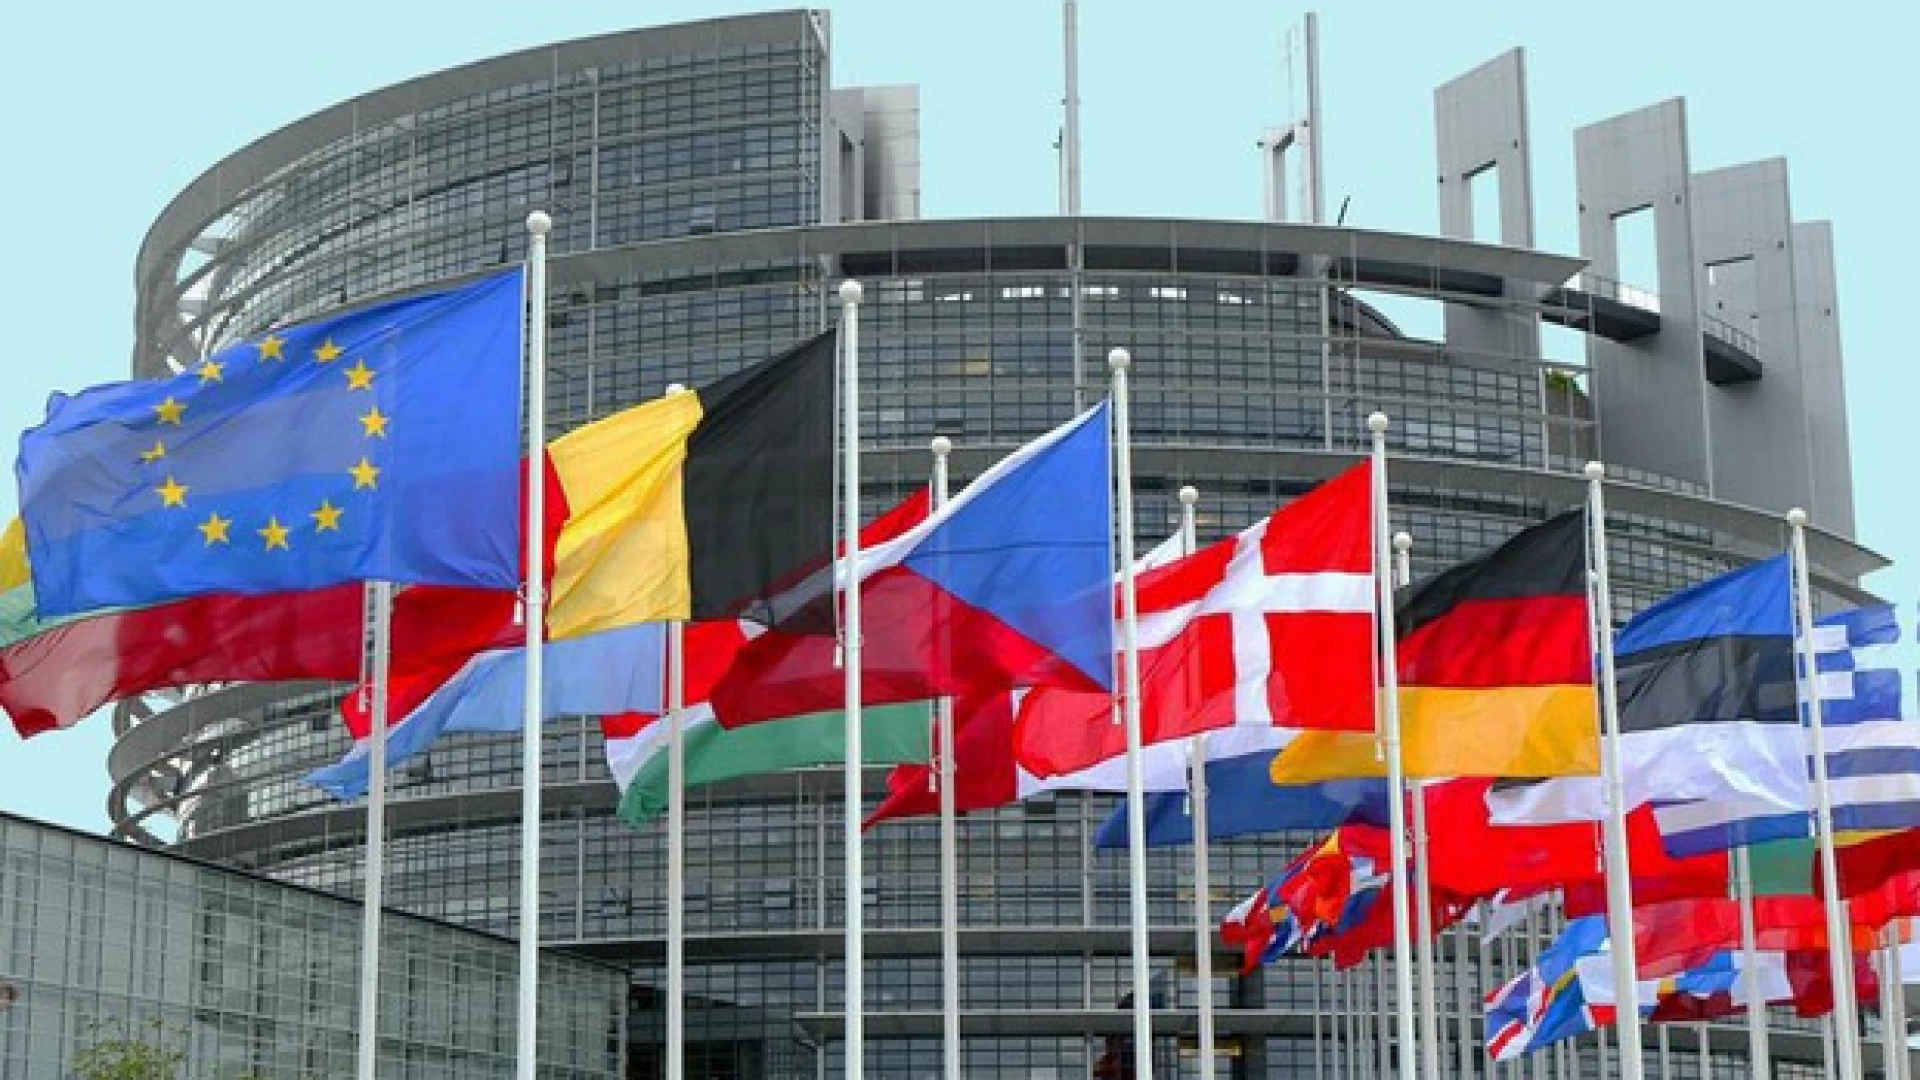 La Settimana Europea delle Regioni e delle Città é in corso a Bruxelles. Molise e Basilicata regioni con più alte percentuali di crescita d’imprese.